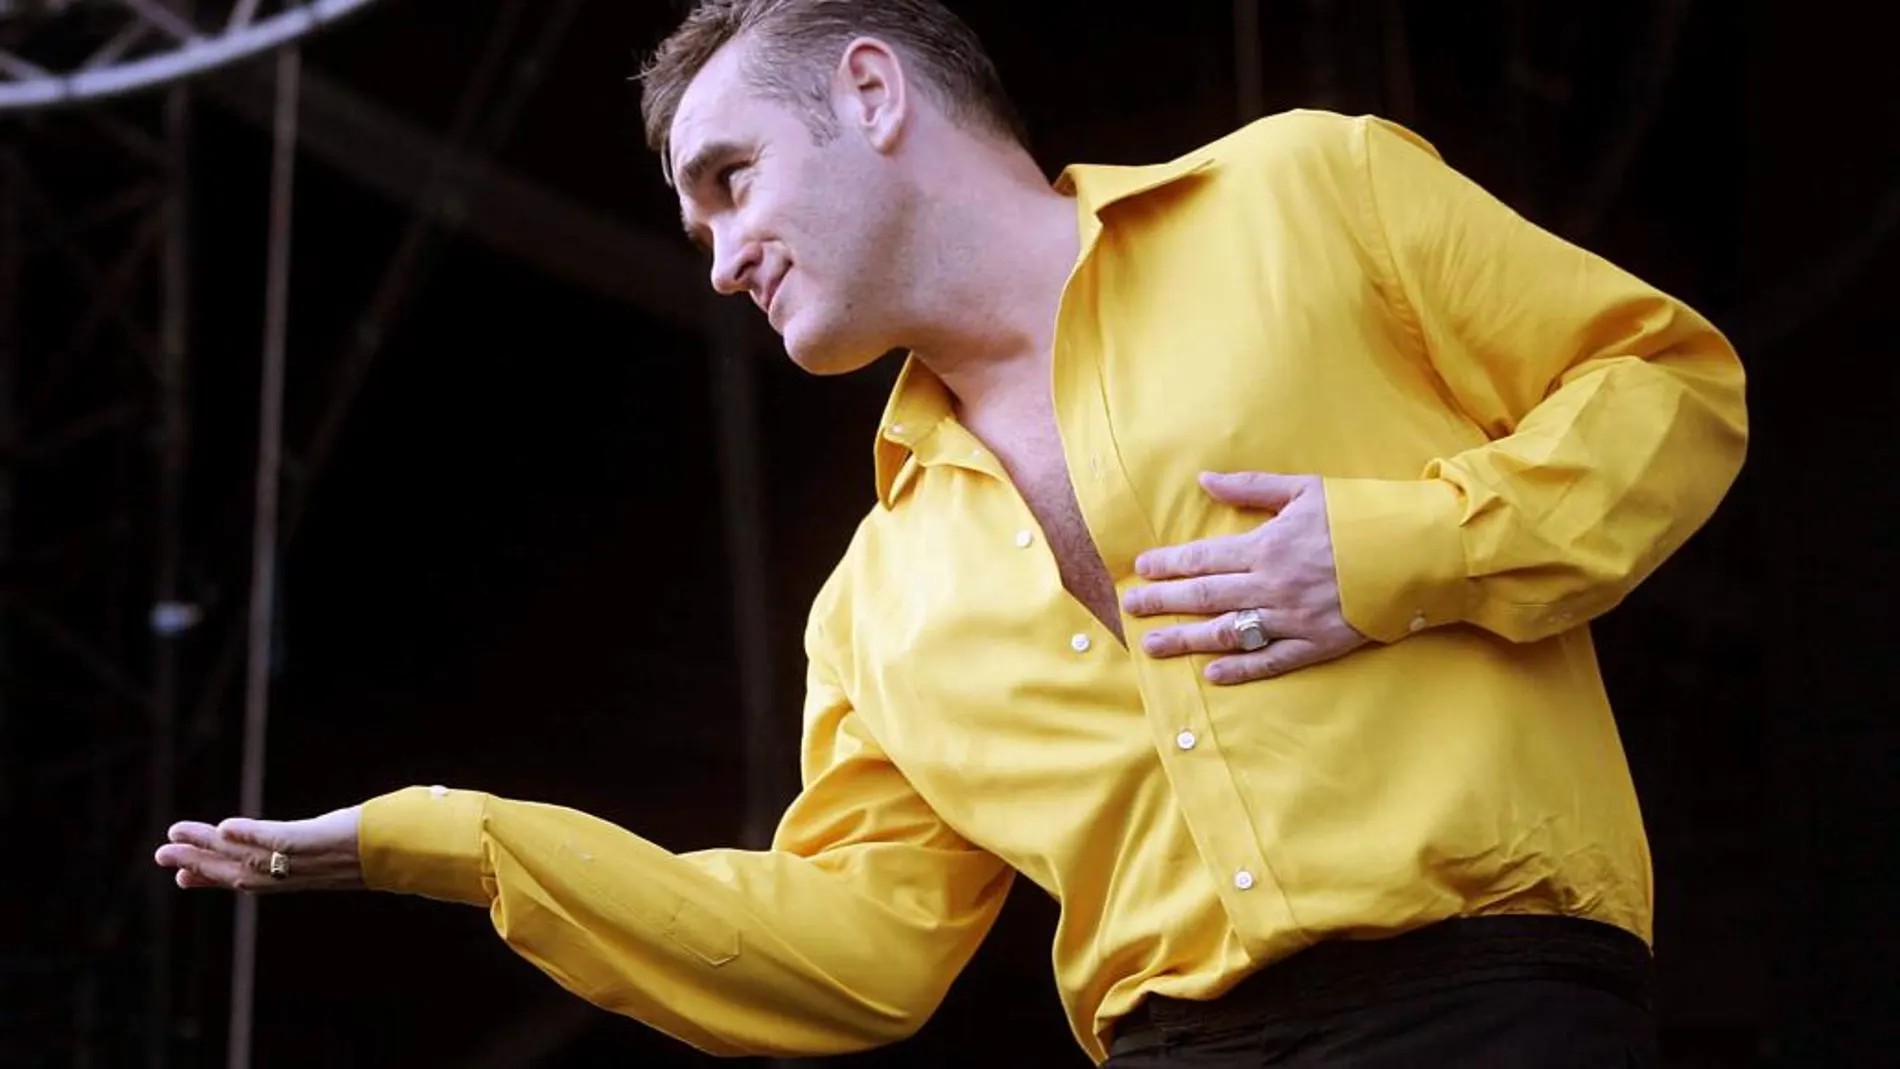 Morrissey, las vidas del artista incomprendido